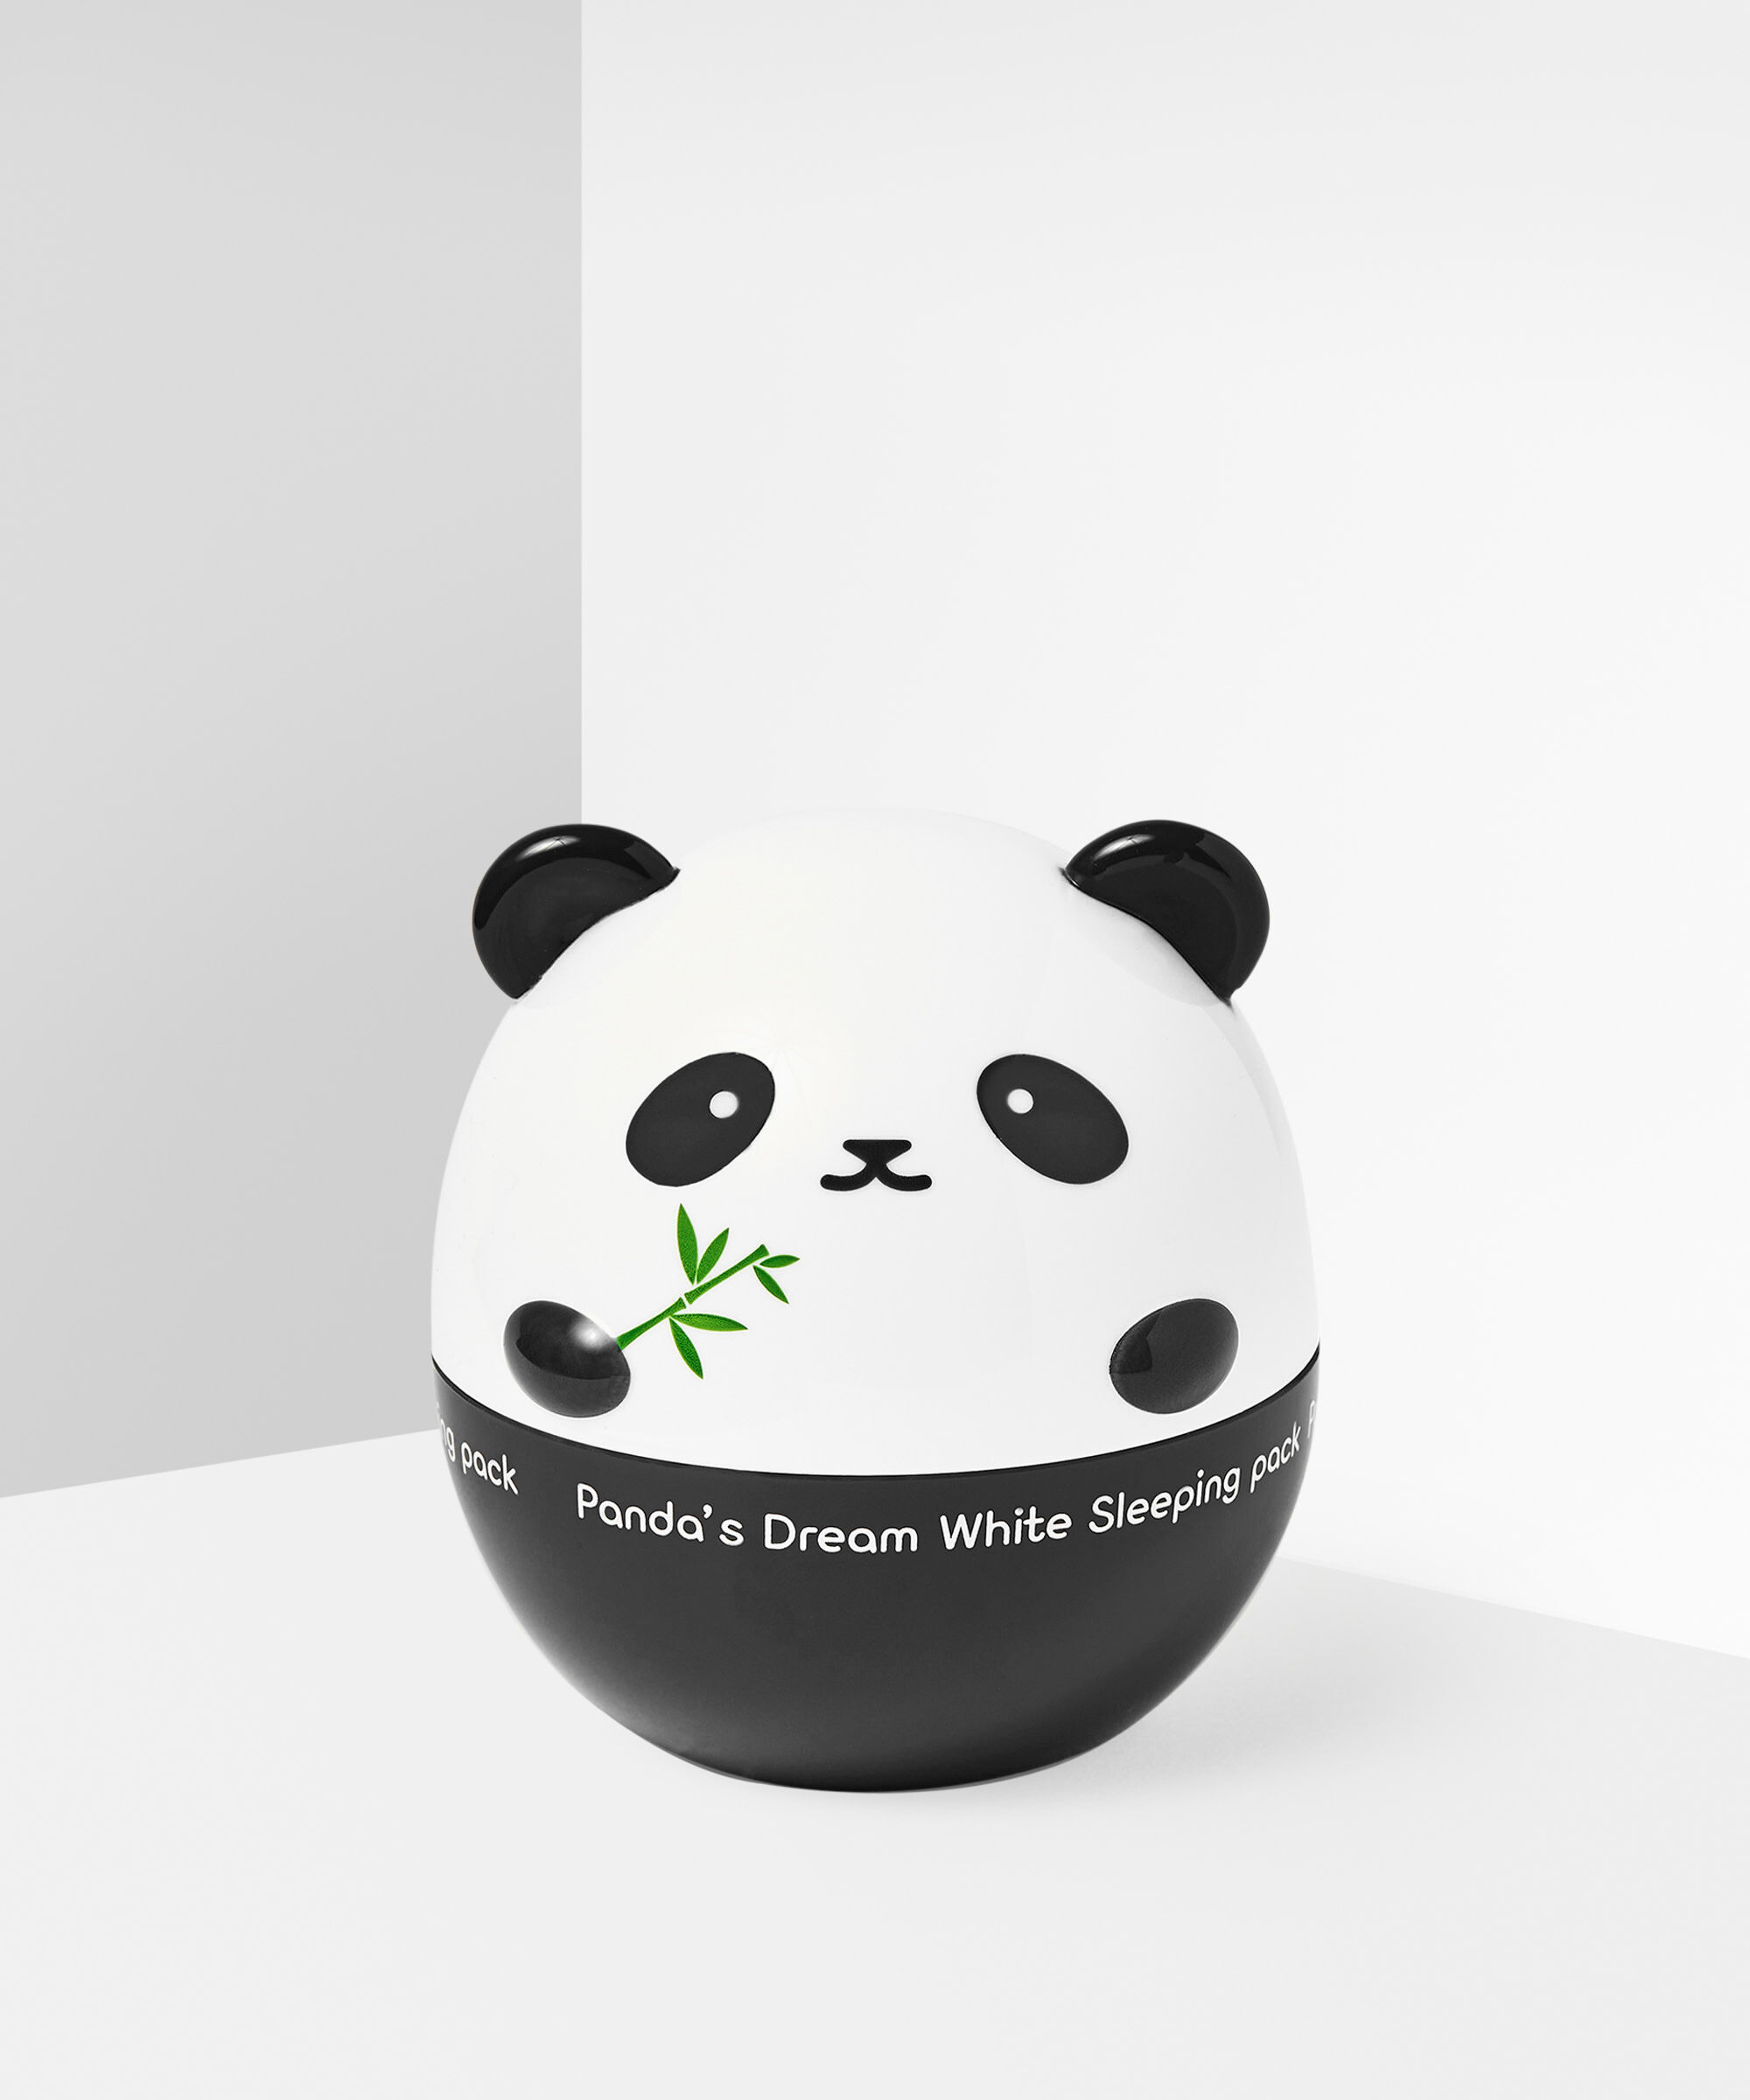 TONYMOLY - Panda's Dream White Sleeping Pack